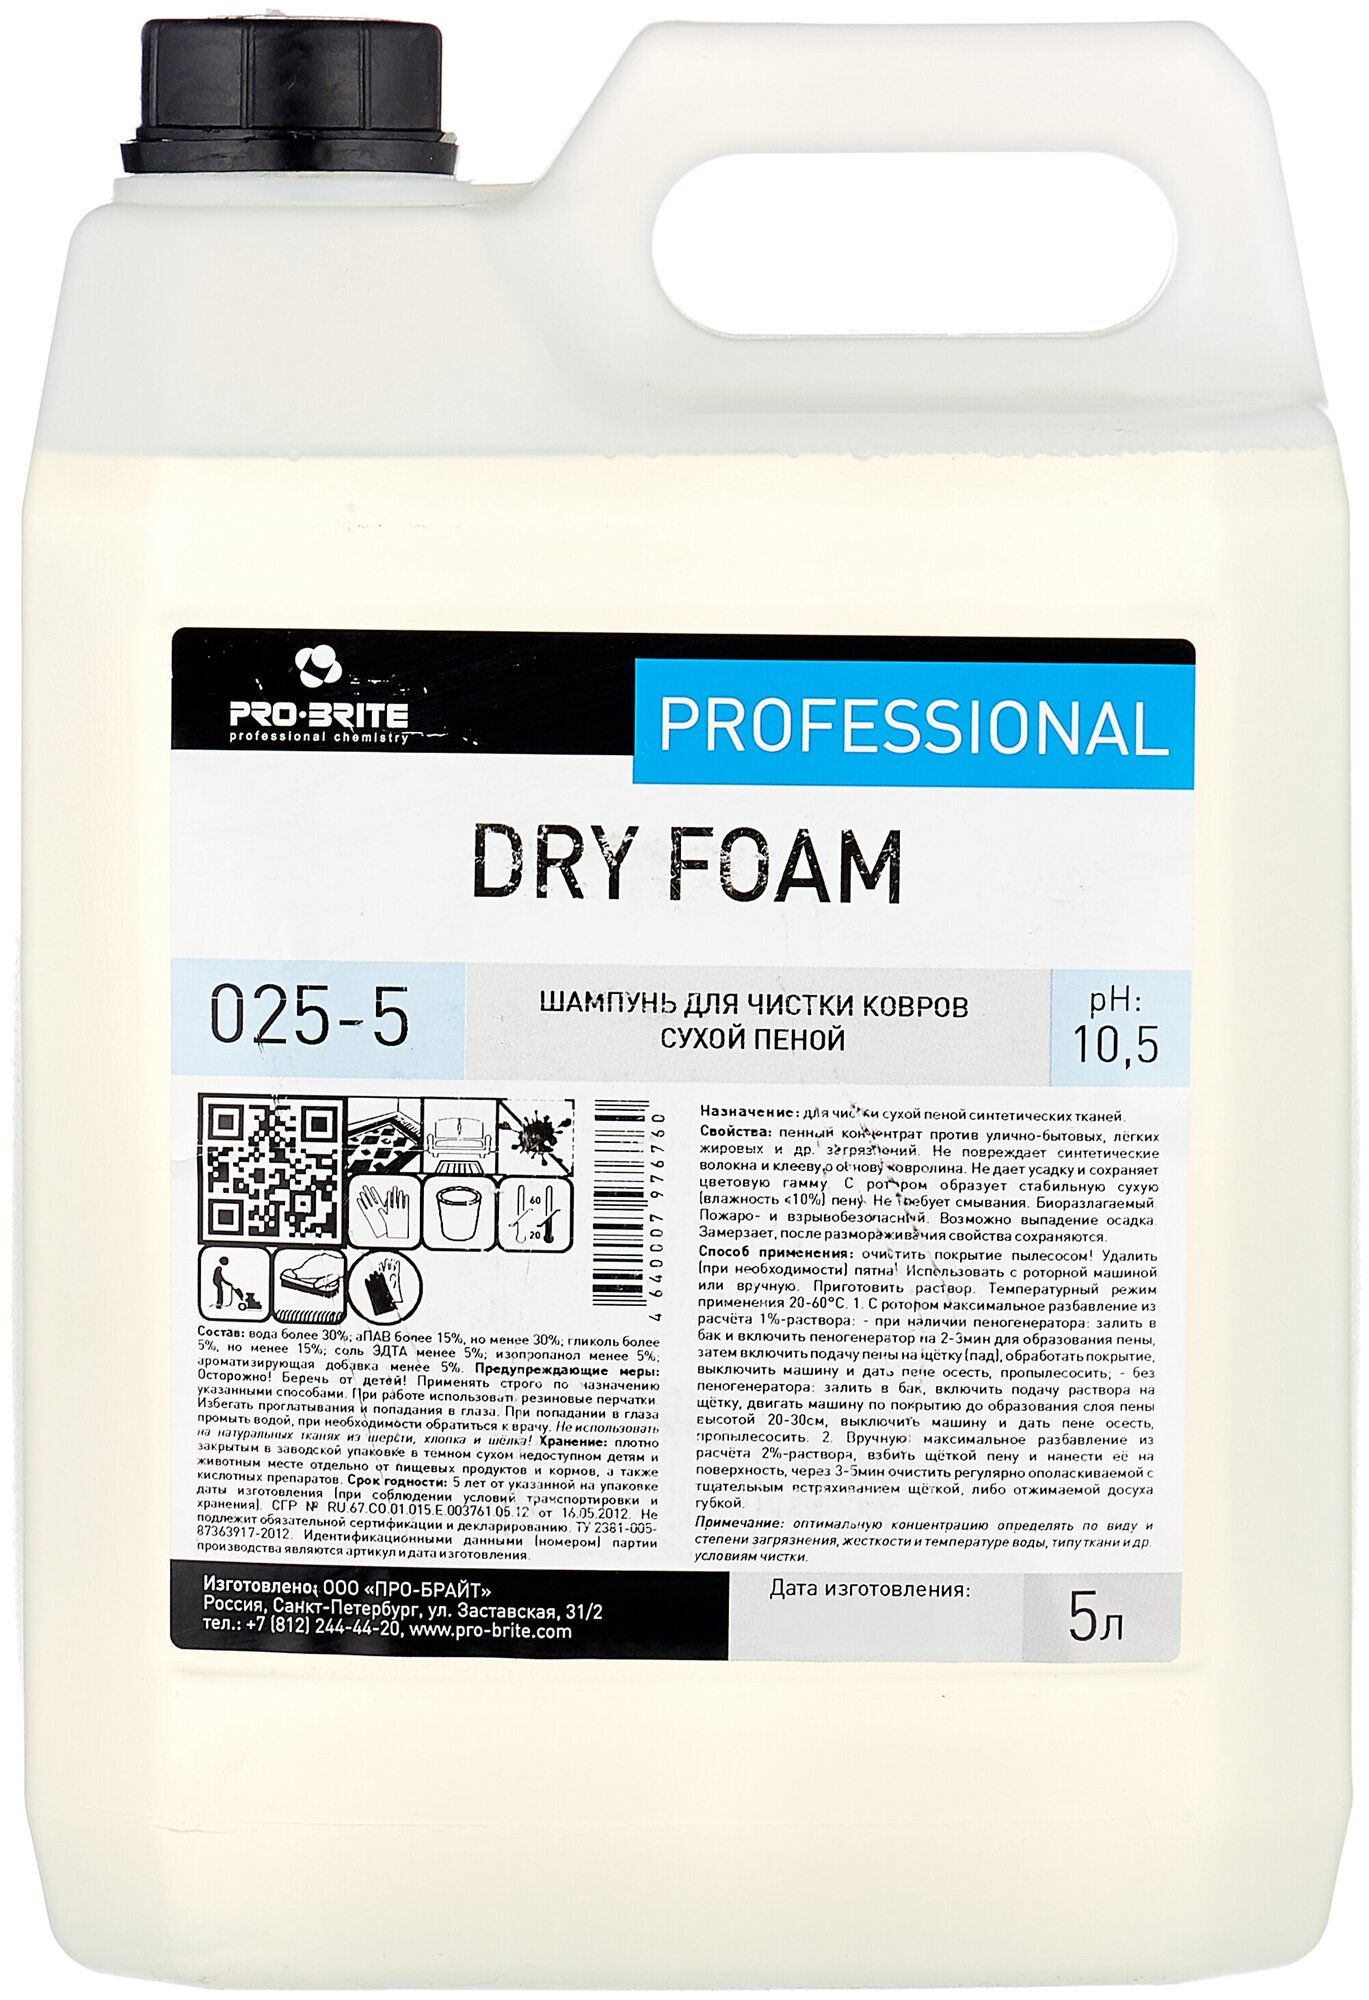 PRO-BRITE DRY FOAM шампунь для чистки ковров сухой пеной 5л